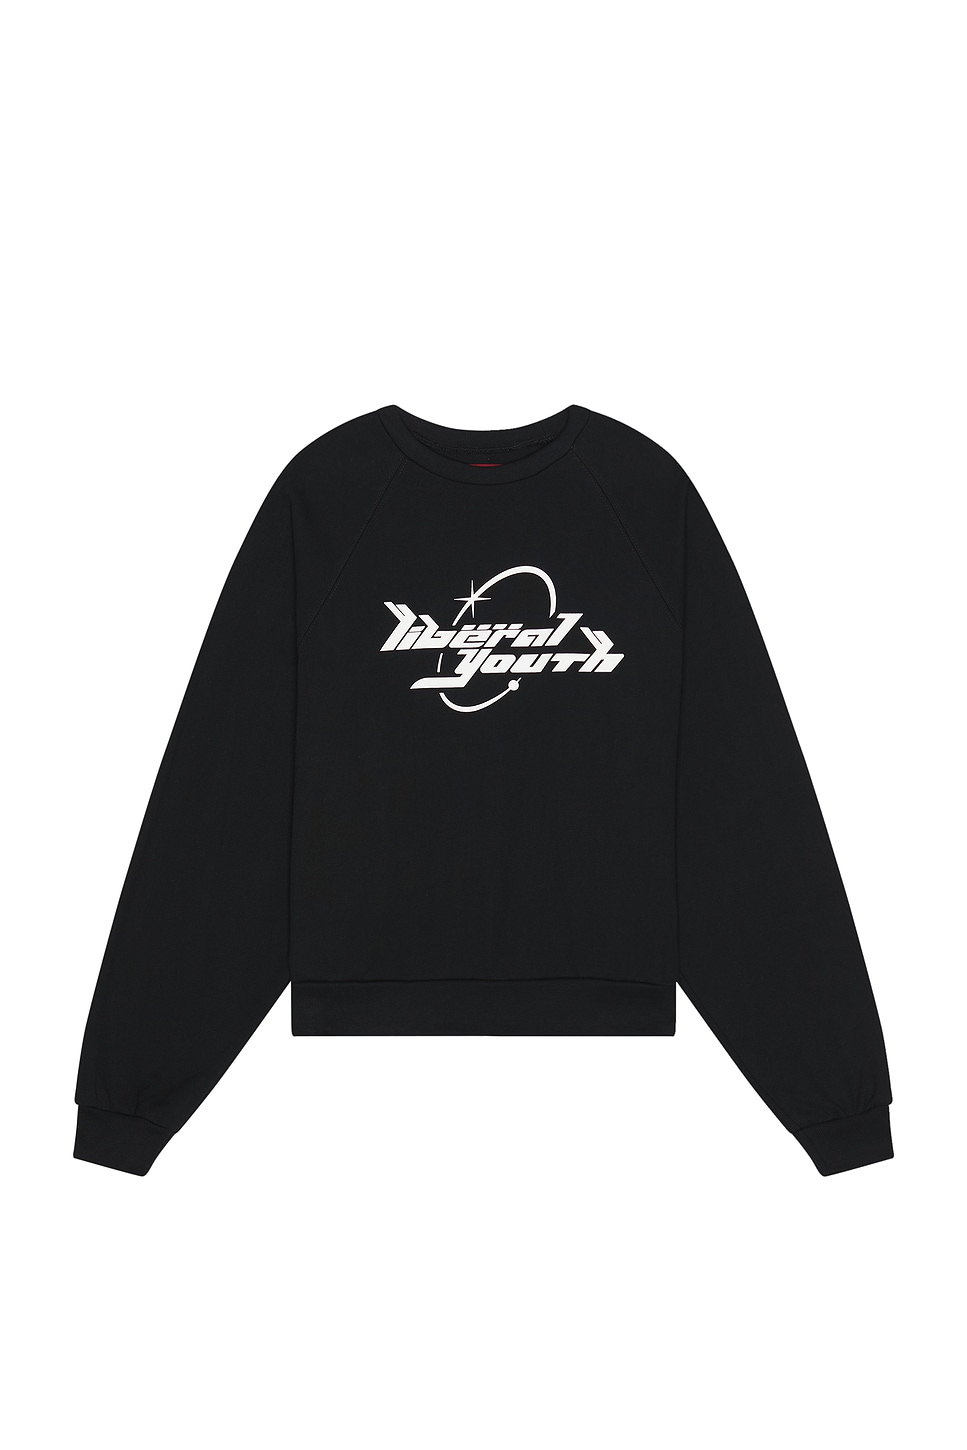 90s Sweatshirt Knit in Black